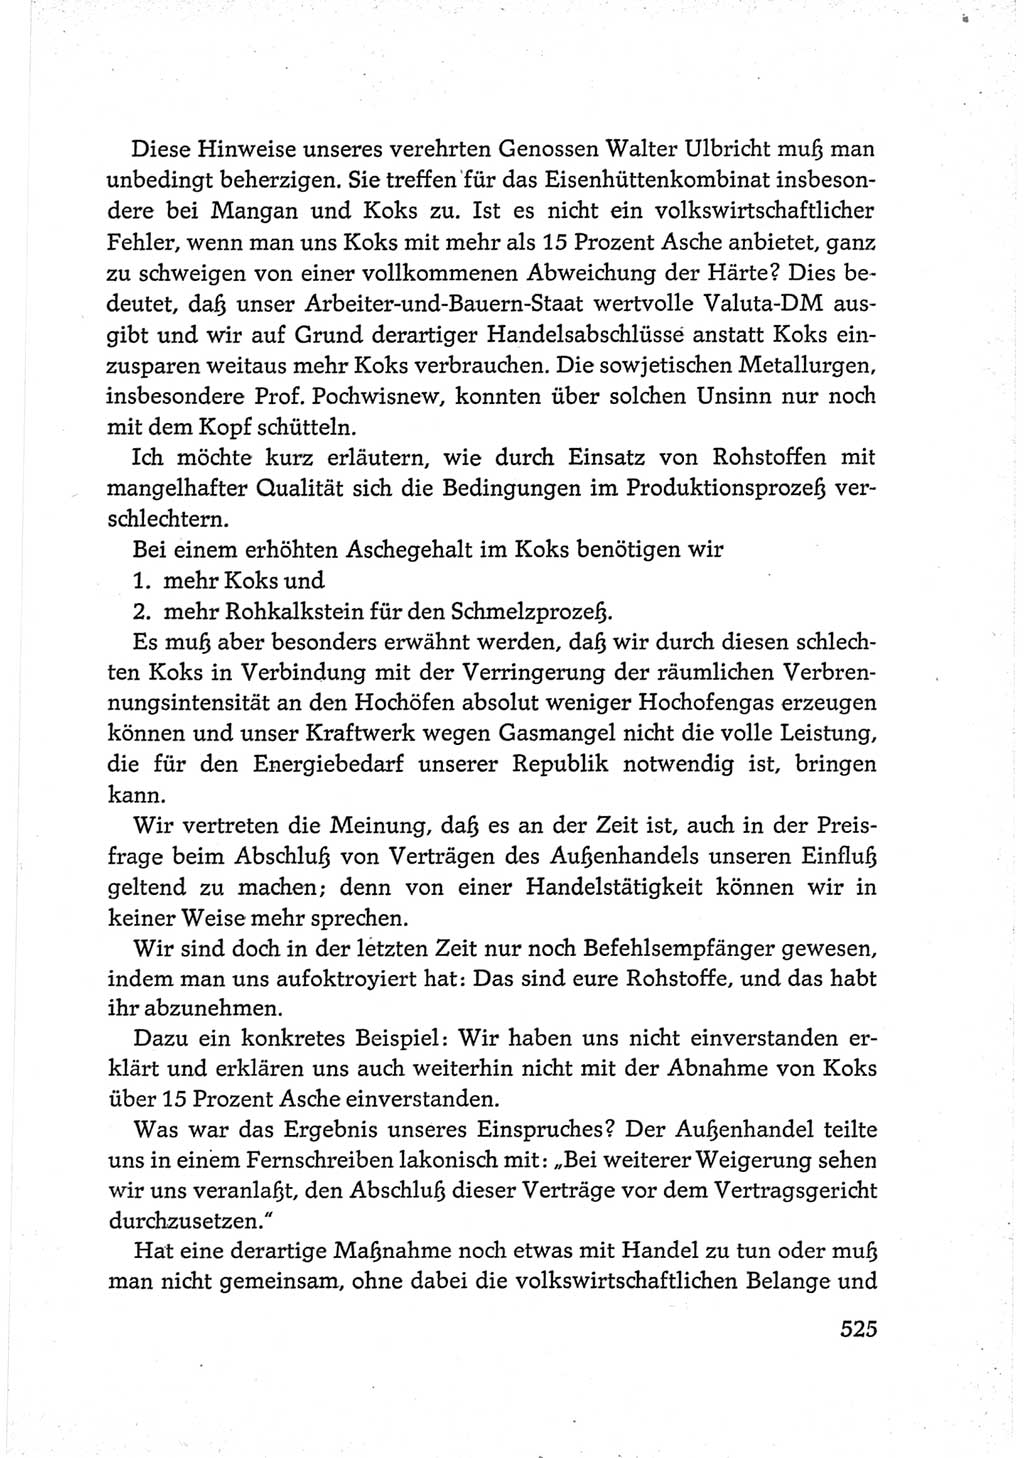 Protokoll der Verhandlungen des Ⅵ. Parteitages der Sozialistischen Einheitspartei Deutschlands (SED) [Deutsche Demokratische Republik (DDR)] 1963, Band Ⅲ, Seite 525 (Prot. Verh. Ⅵ. PT SED DDR 1963, Bd. Ⅲ, S. 525)